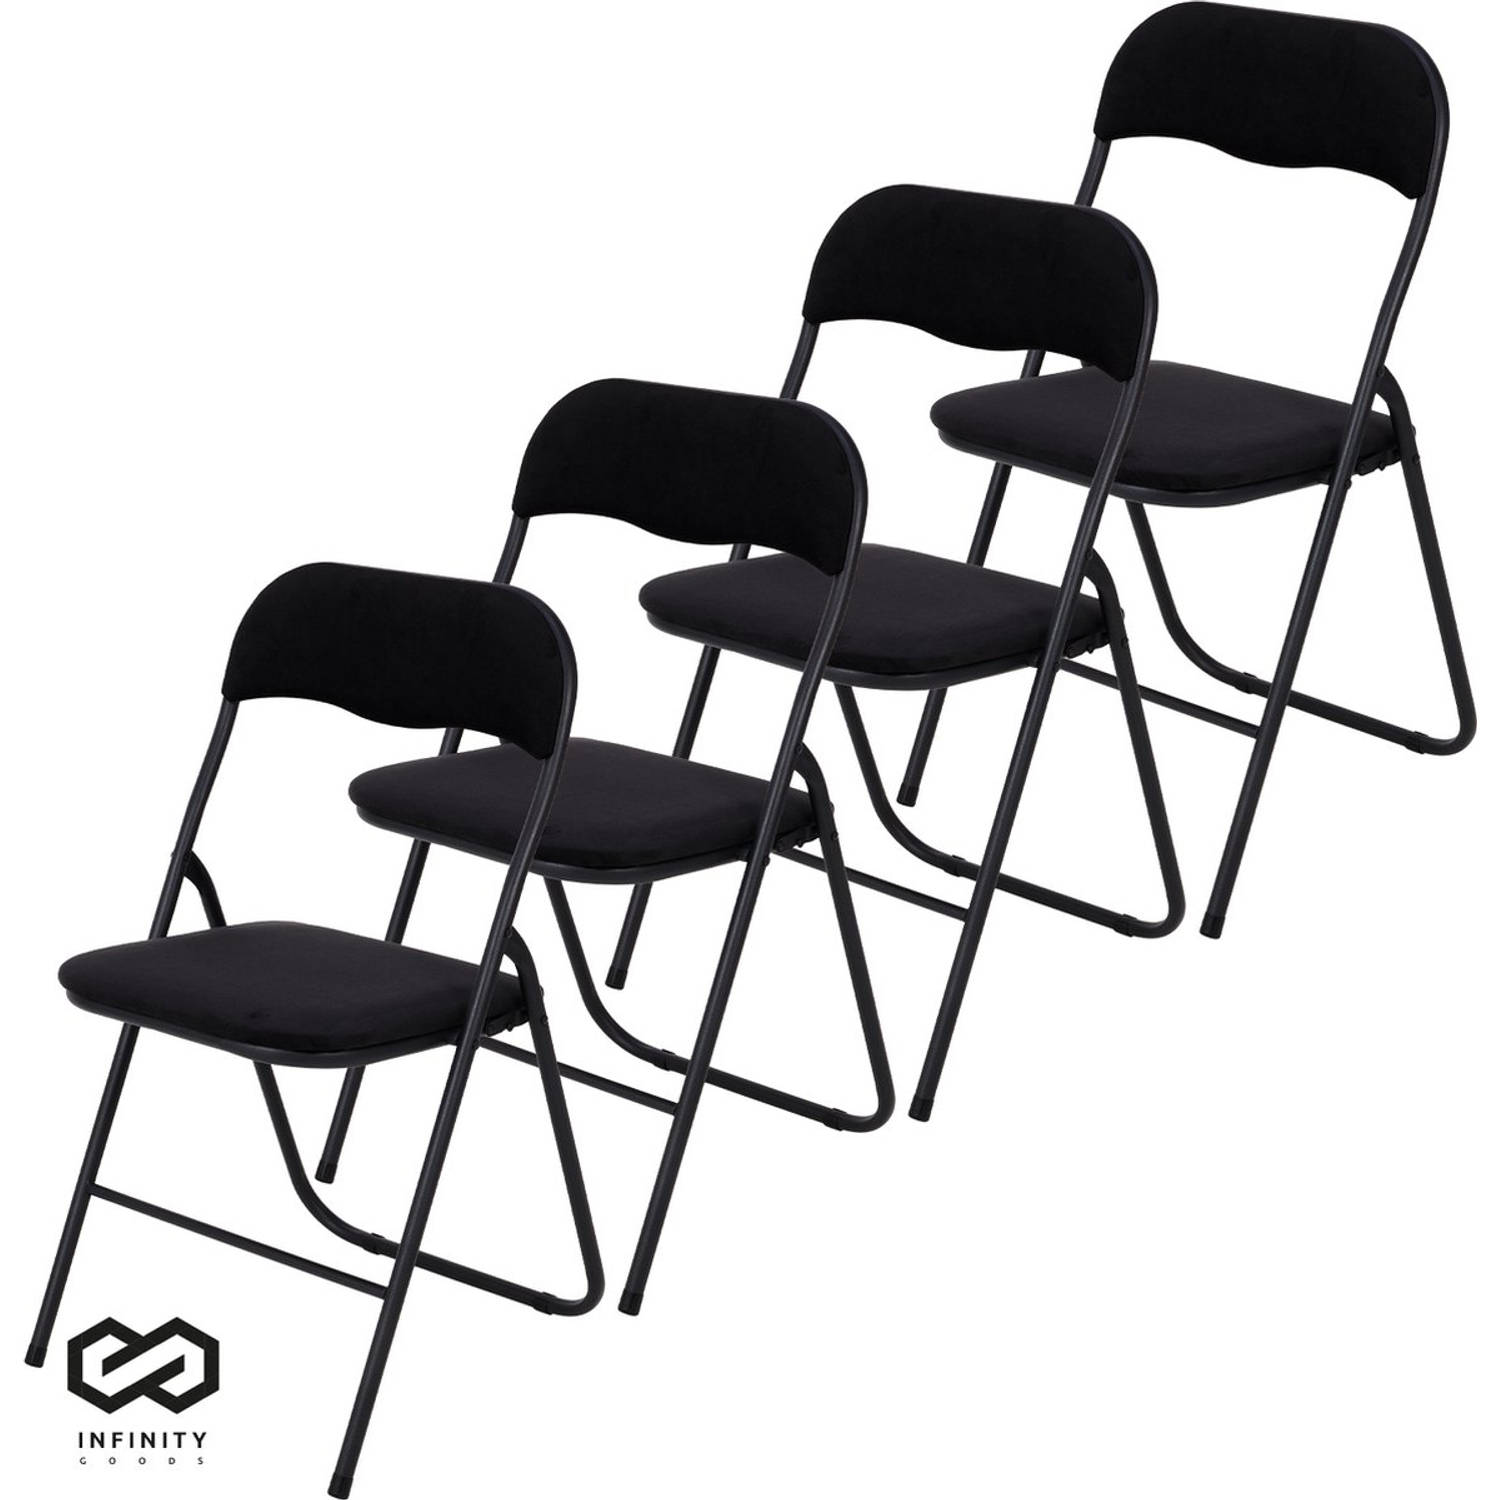 Infinity Goods Klapstoelen Set van 4 Vouwstoelen Fluweel Eettafelstoelen Opklapbare Stoelen 43 x 47 